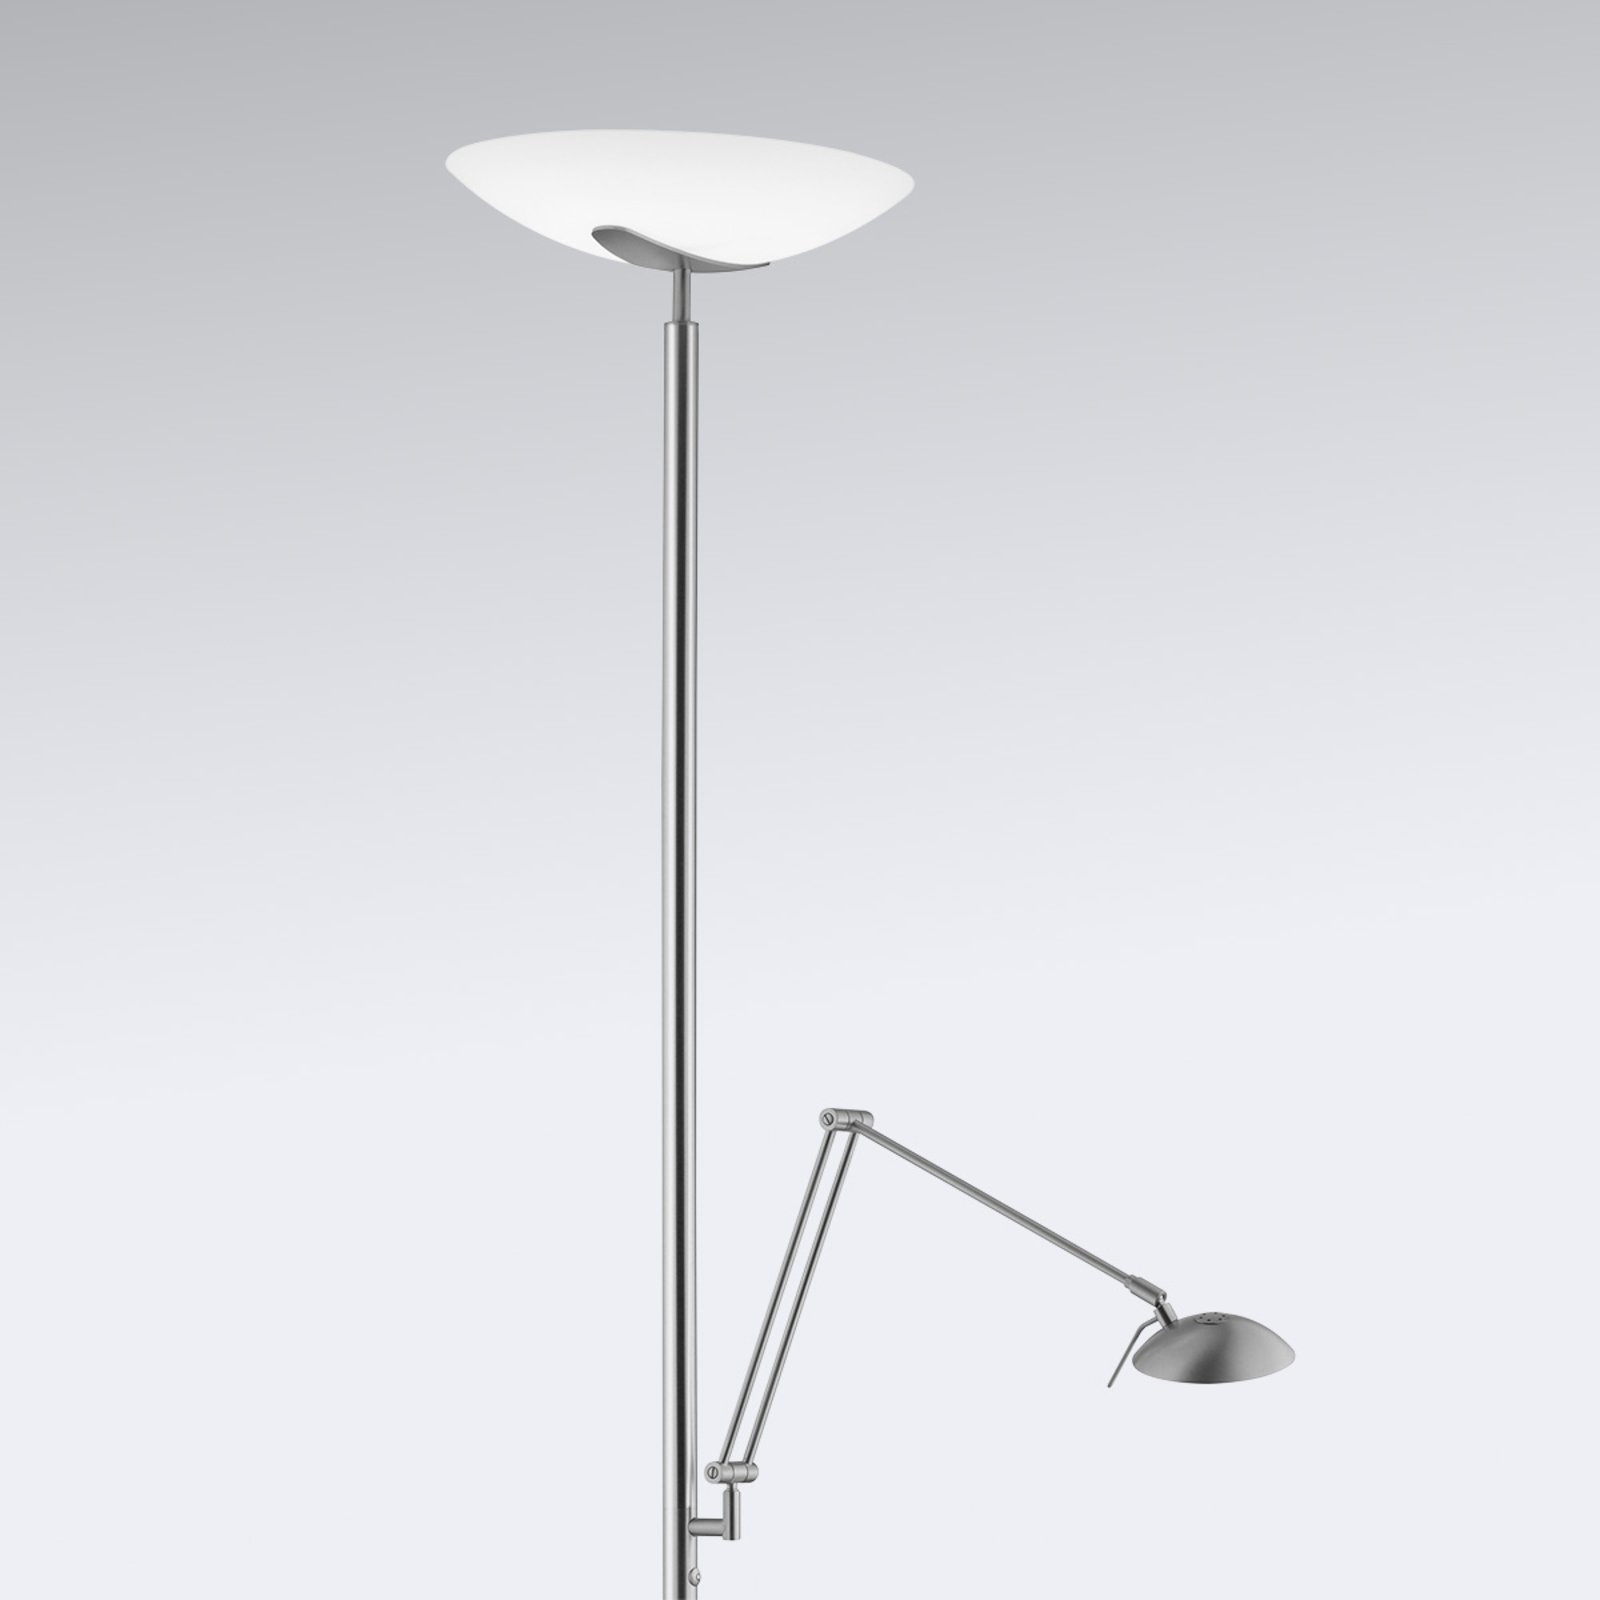 LED uplighter floor lamp floor lamp Lya reading light, nickel-chrome